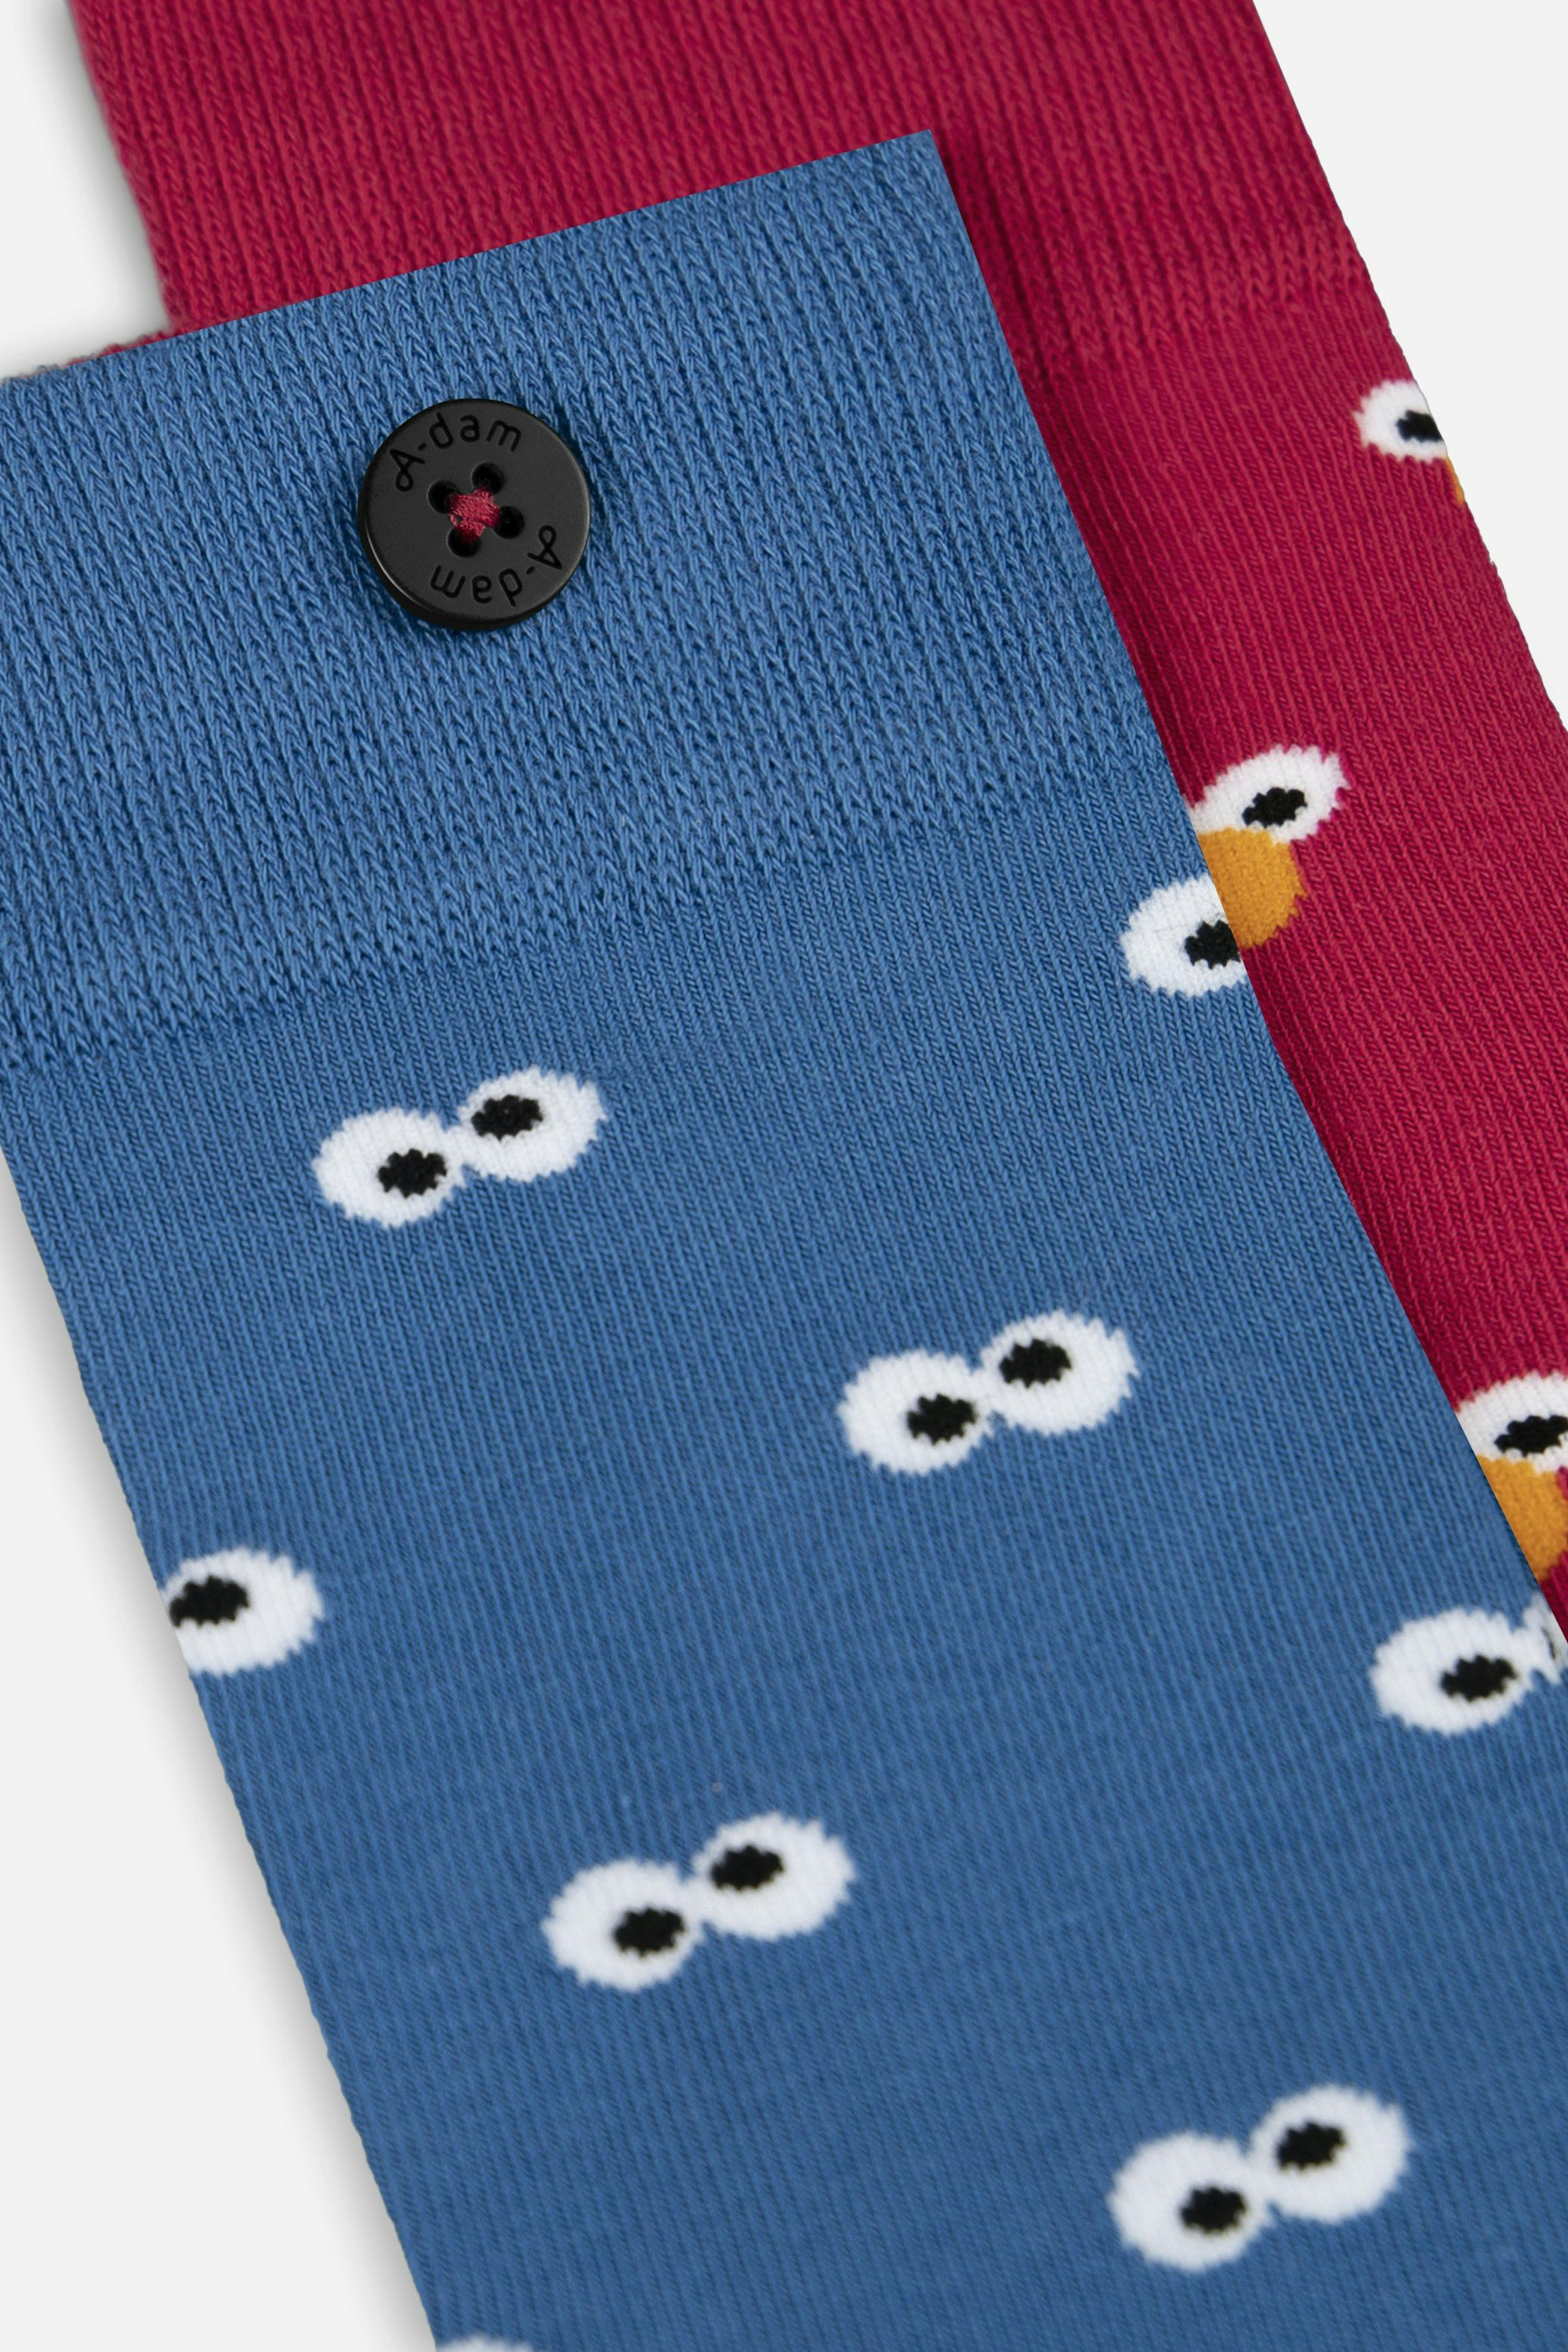 A-dam & Sesame Street Cookie Monster Socks from organic cotton | A-dam